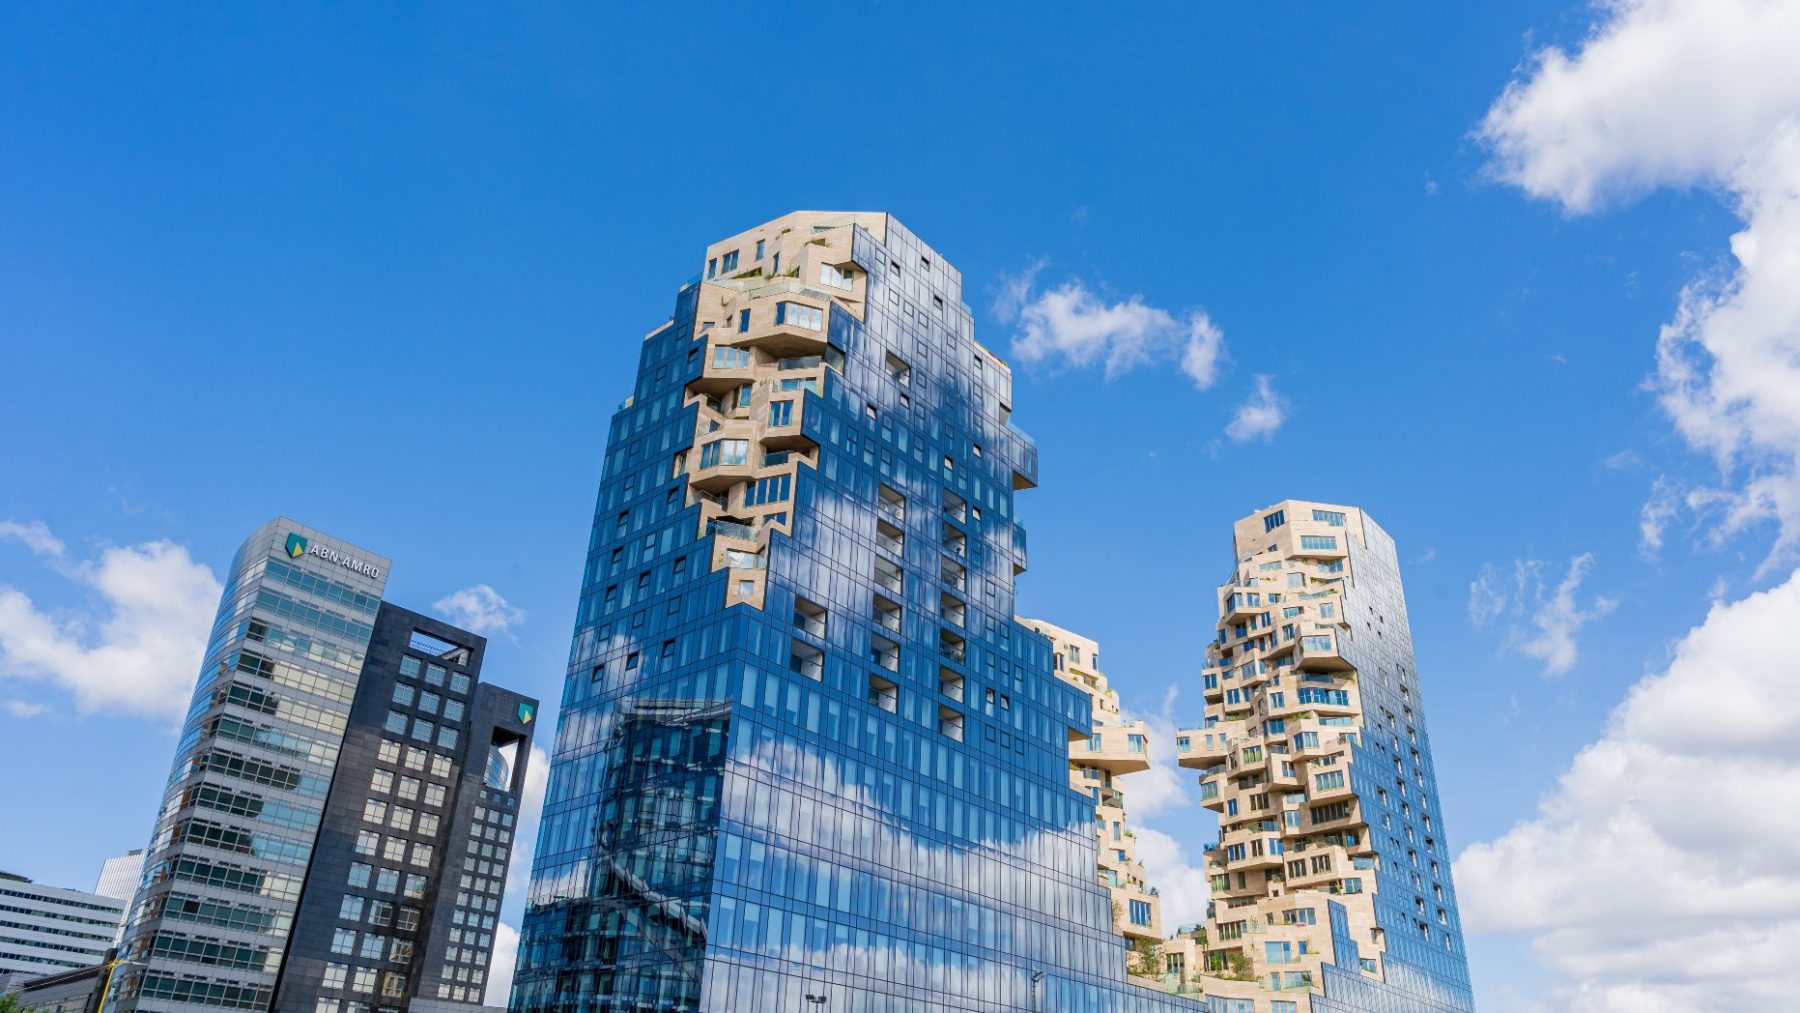 Amsterdamse toren wint internationale architectuurprijs: 'Architectonisch hoogstandje'